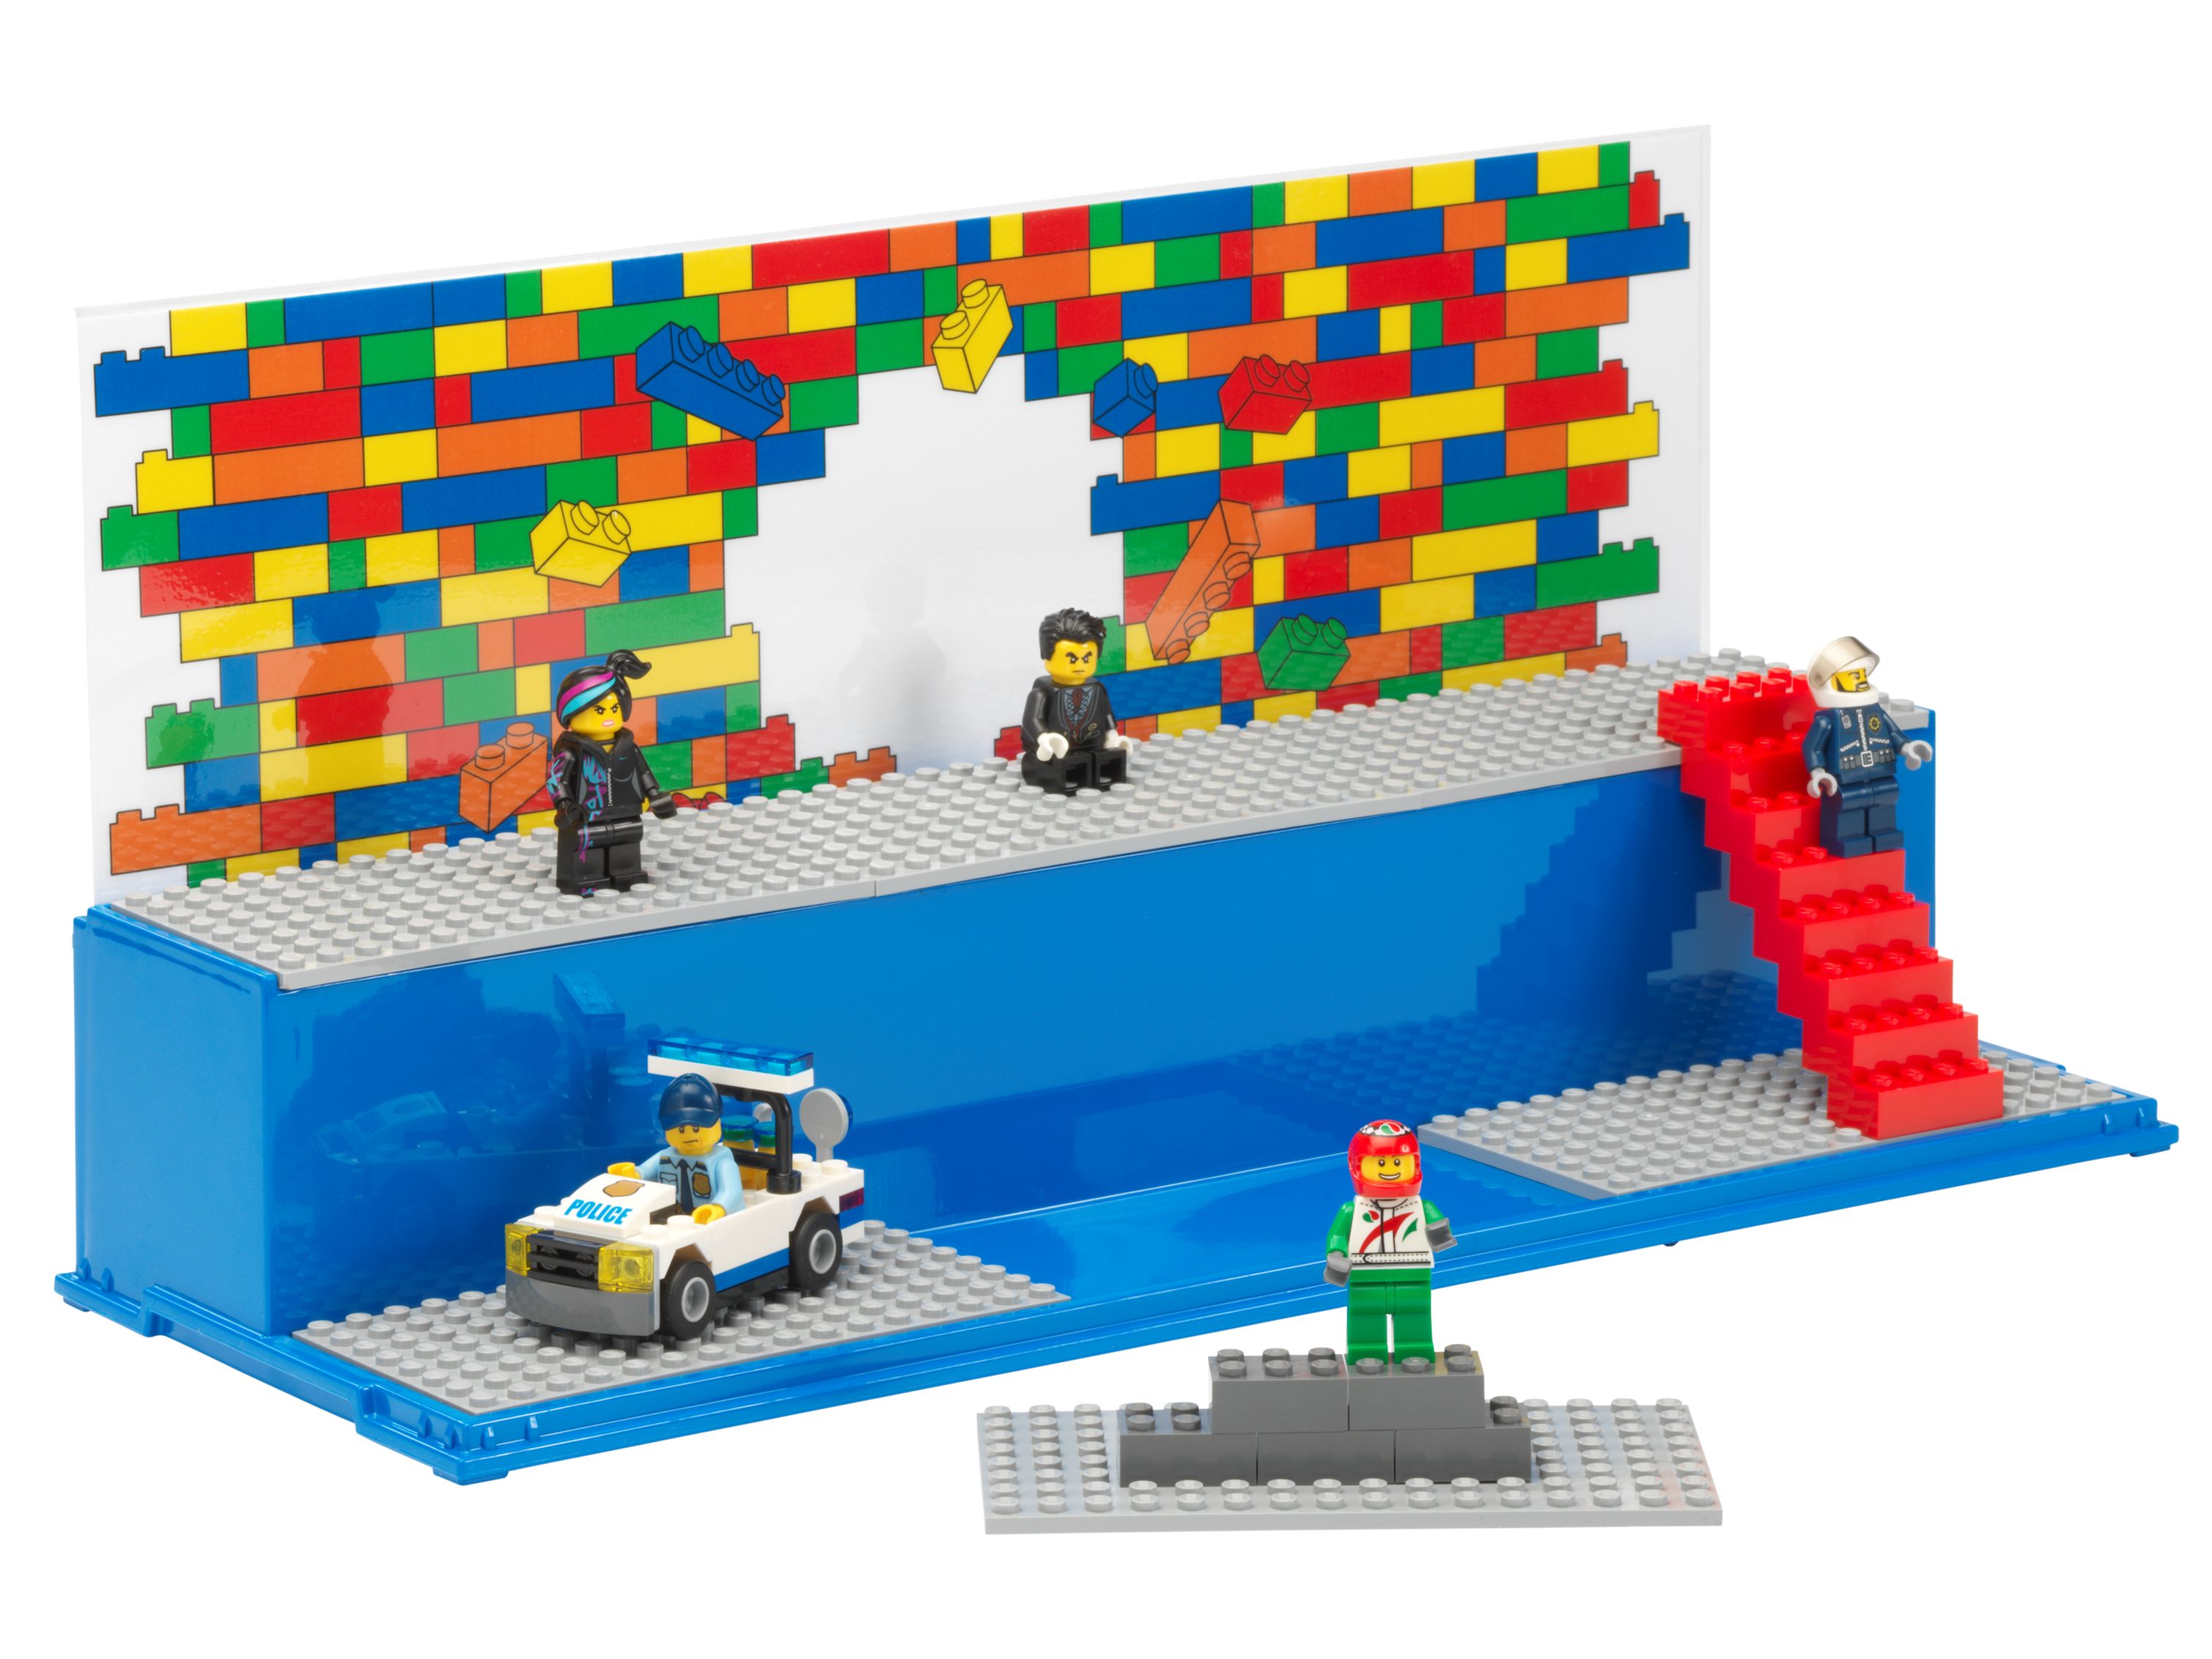 LEGO Gear 5006157 LEGO® Spiel- und Schaukasten LEGO_5006157_alt1.jpg